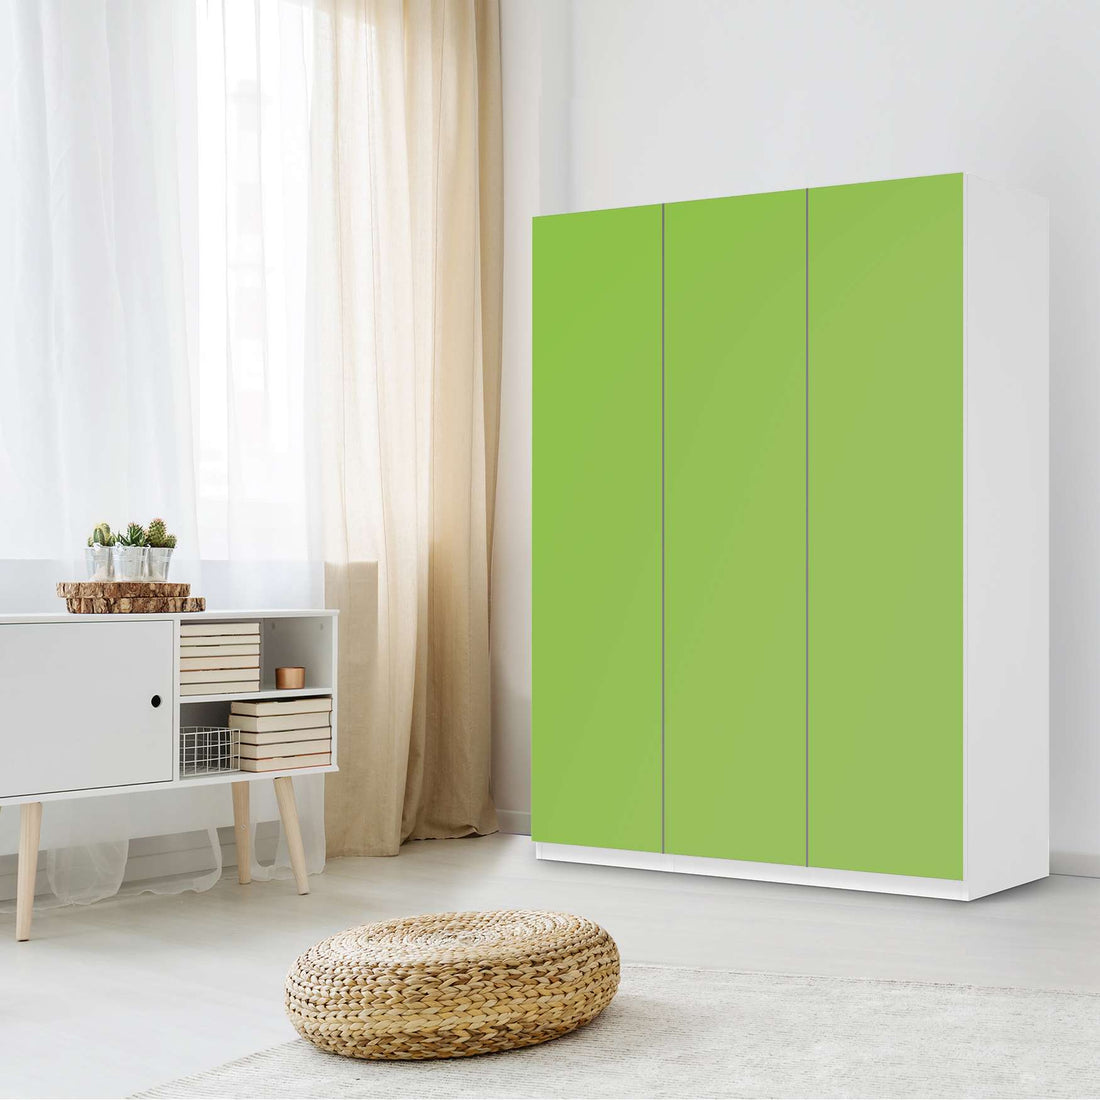 Folie für Möbel Hellgrün Dark - IKEA Pax Schrank 201 cm Höhe - 3 Türen - Schlafzimmer